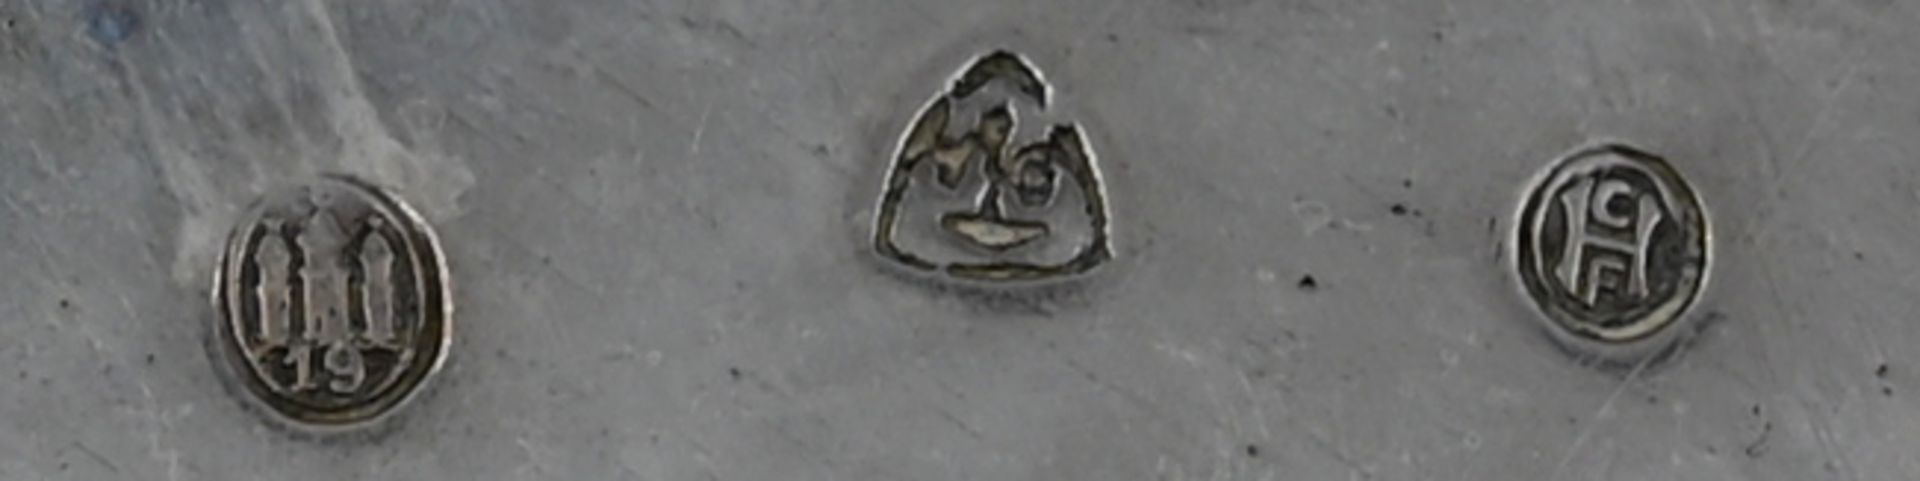 1 Schale godronierte Form / 1 kleiner Platztelller passig geschweifter Rand jew. Silber Dänemark, 19 - Image 3 of 3